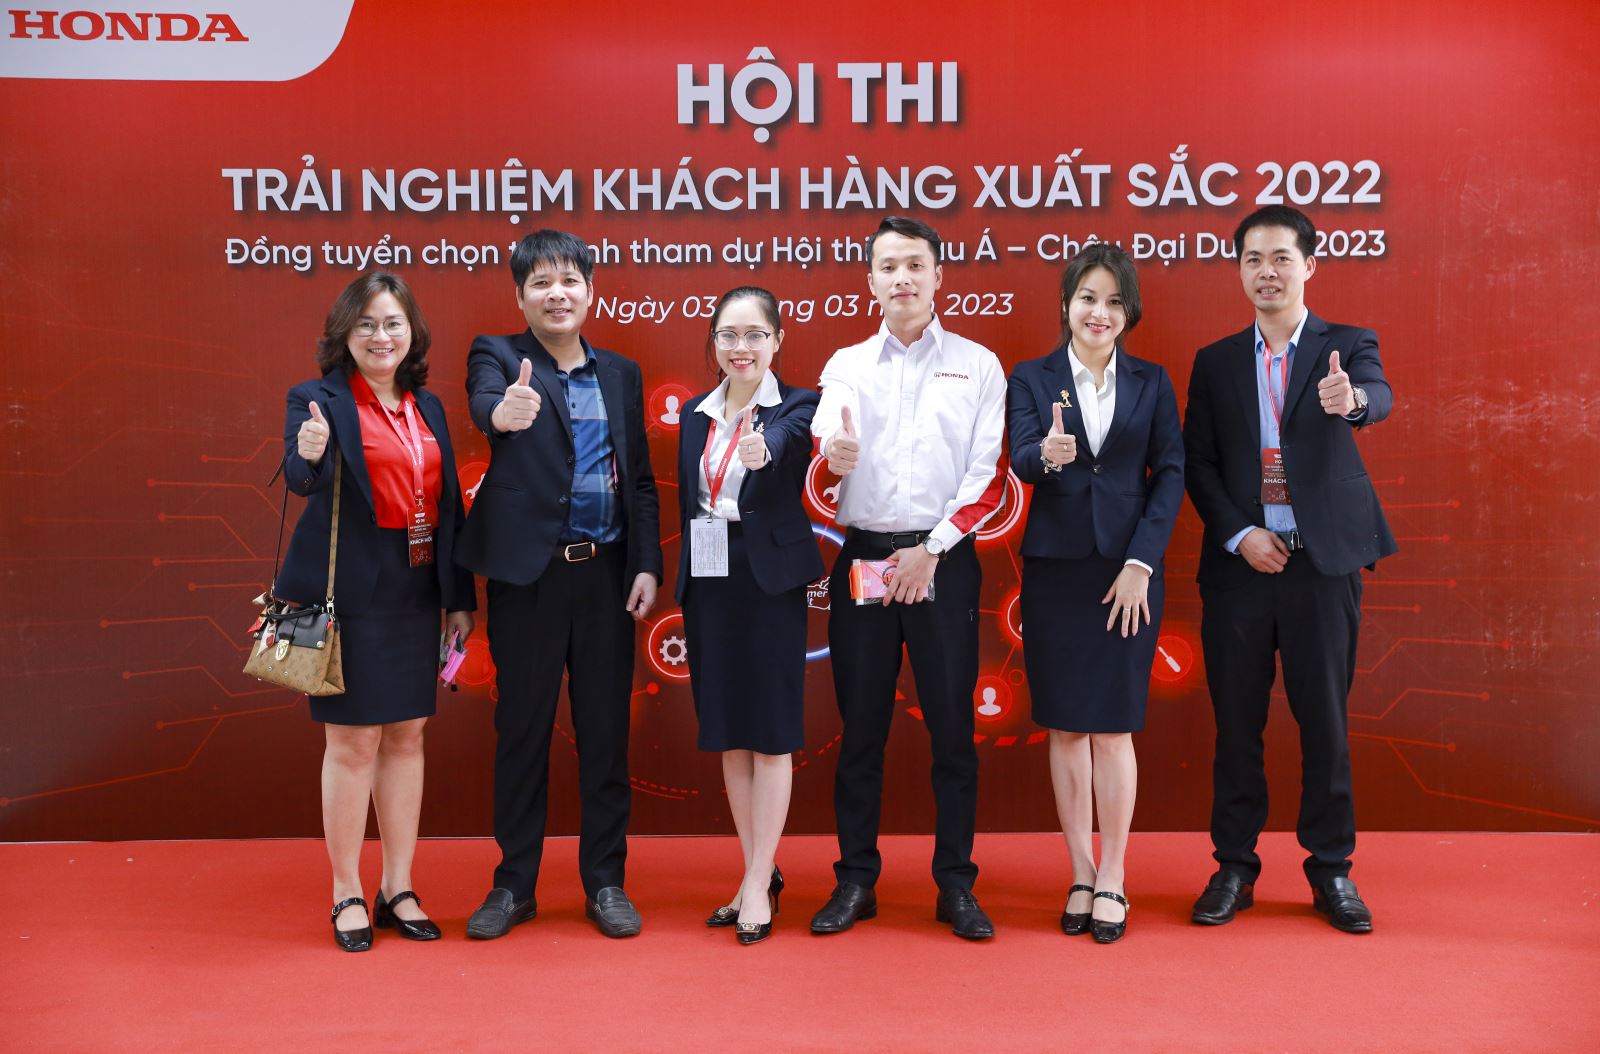 Honda Việt Nam công bố kết quả Hội thi Trải nghiệm Khách hàng xuất sắc 2022 & Đồng tuyển chọn thí sinh tham dự Hội thi kỹ thuật viên xuất sắc Châu Á – Châu Đại Dương 2023 dành cho Lĩnh vực Ô tô.